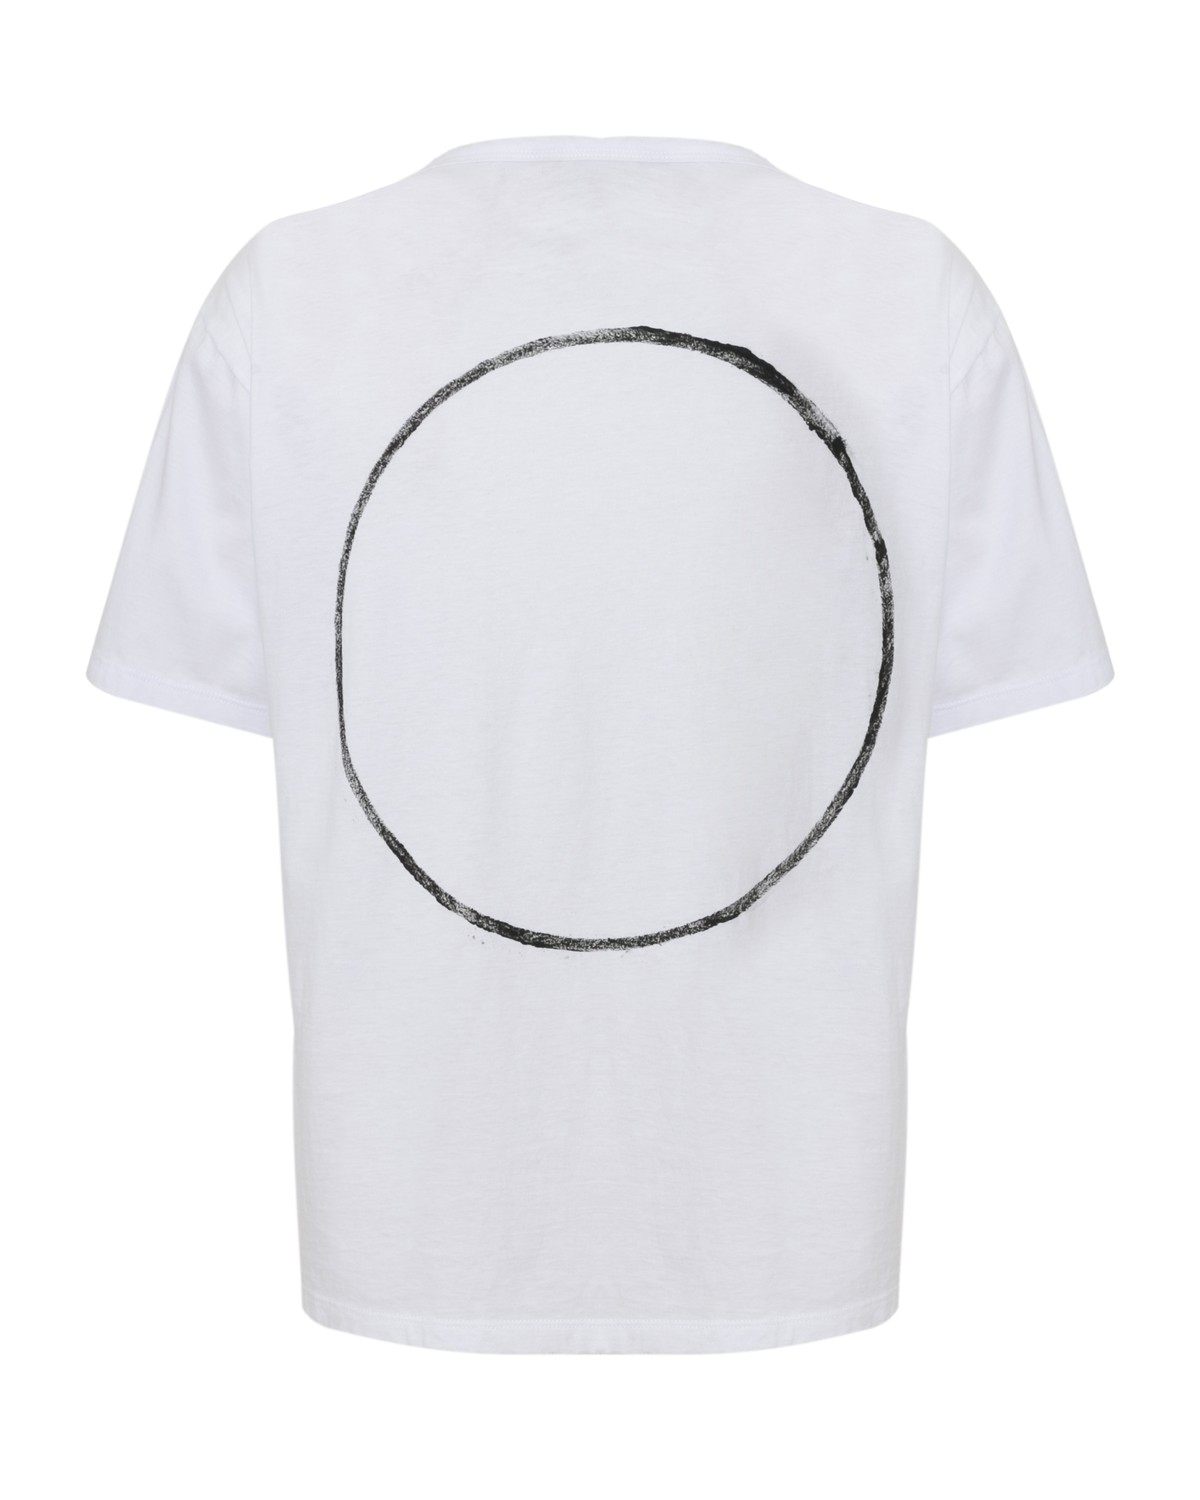 camiseta em algodão pima e desenho geométrico